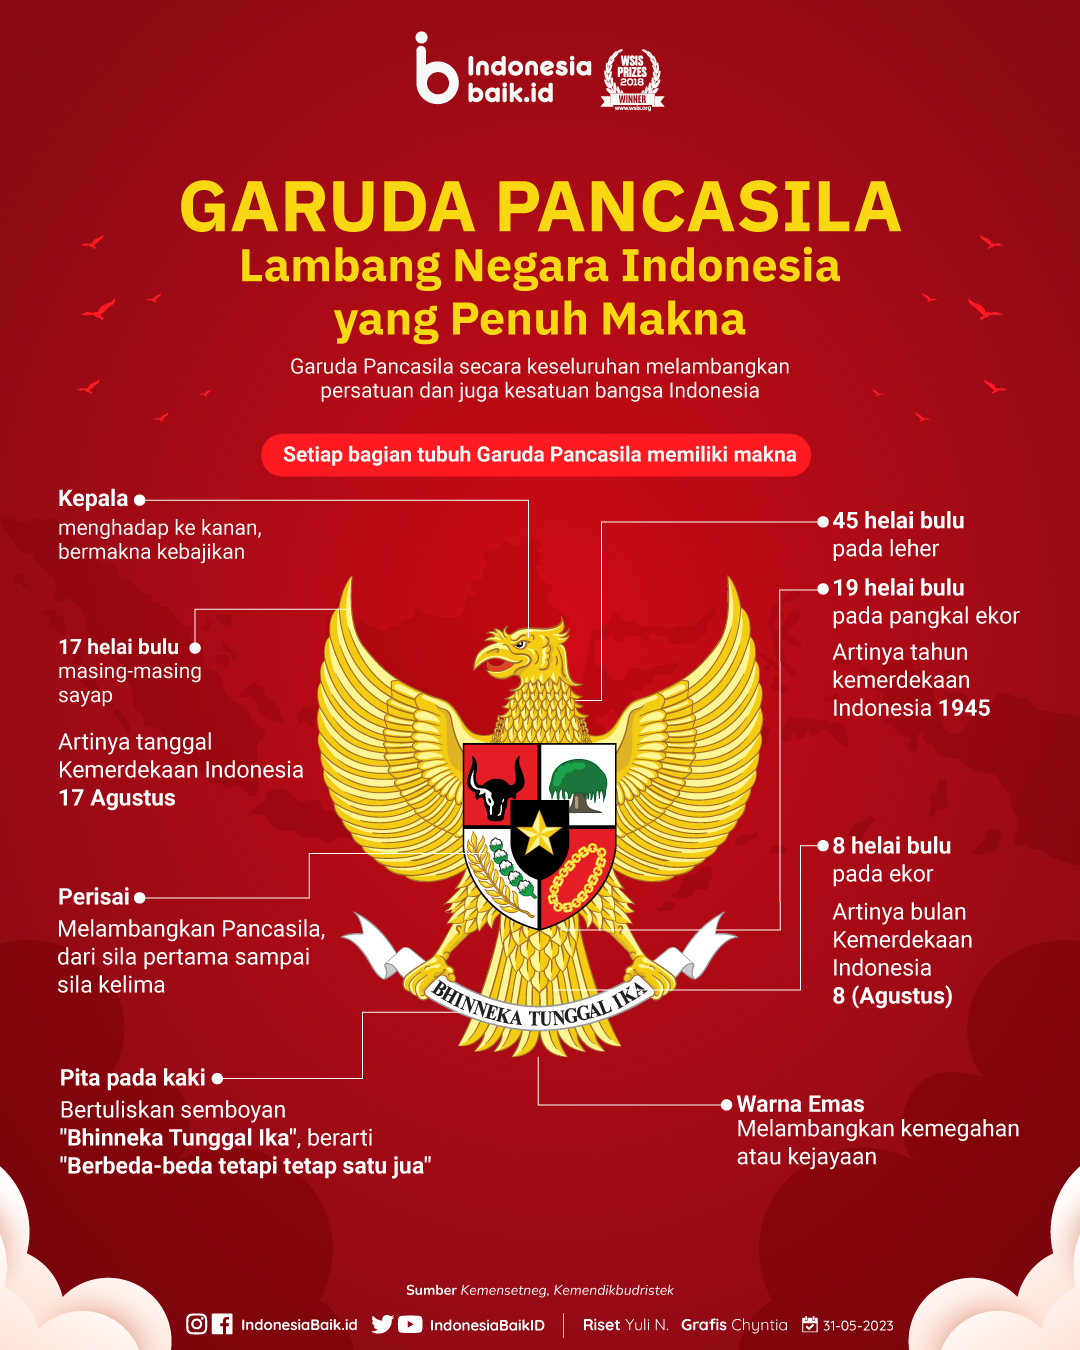 GARUDA PANCASILA, Lambang Negara Indonesia Yang Penuh Makna